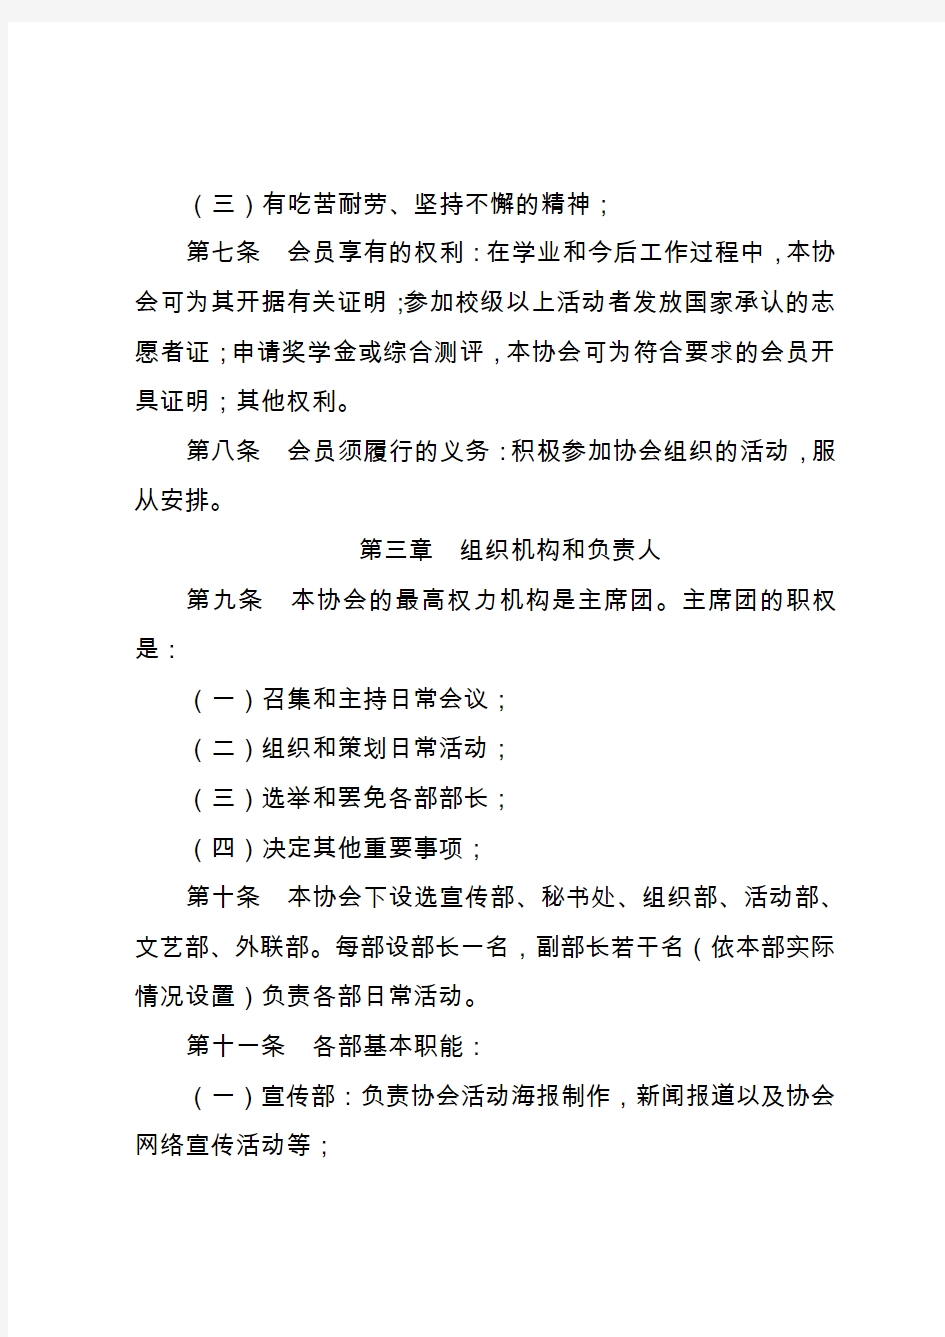 黑龙江大学青年志愿者协会章程